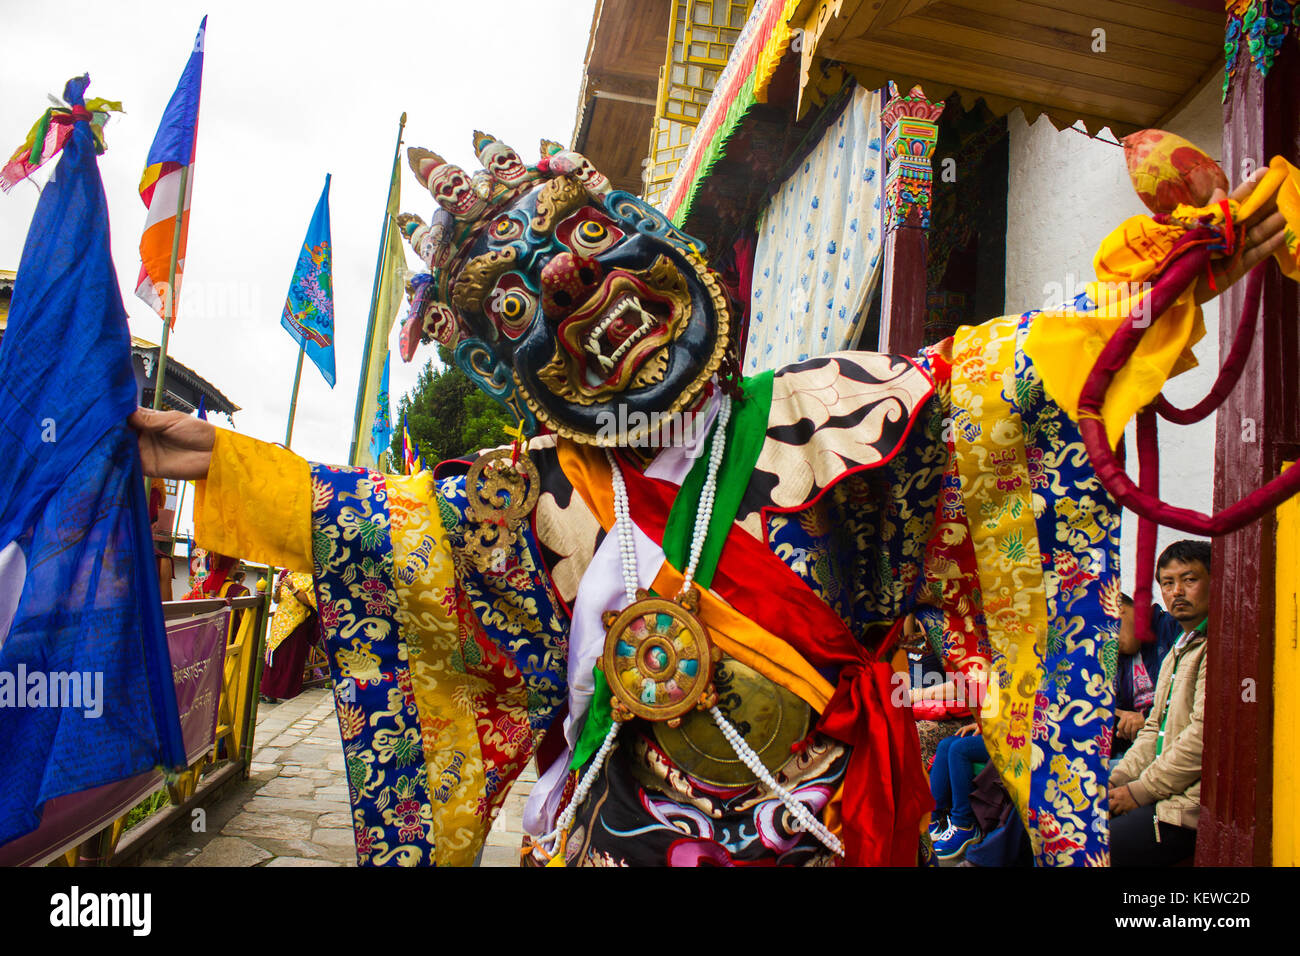 Agosto 29, 2015 - amicizia, armonia, un monte alto e una divinità irata '"" Questi sono i quattro cose che pang lhabsol, un festival annuale in Sikkim è di circa. il tranquillo colle-stato è stato una volta lacerata da conflitti e inimicizia tra il lepchas e il bhutias (di origine tibetana). La gente del luogo credo che pang lhabsol è stato per la prima volta celebrata a volte nel XIII secolo per contrassegnare l'inizio di relazioni pacifiche tra i gruppi guerriglieri. lepcha thekongtek capo e tibetano crown prince khya bumsa eretto nove lastre a kabilunchok (nei pressi di Gangtok, l'attuale capitale), legato negli intestini degli animali aro Foto Stock